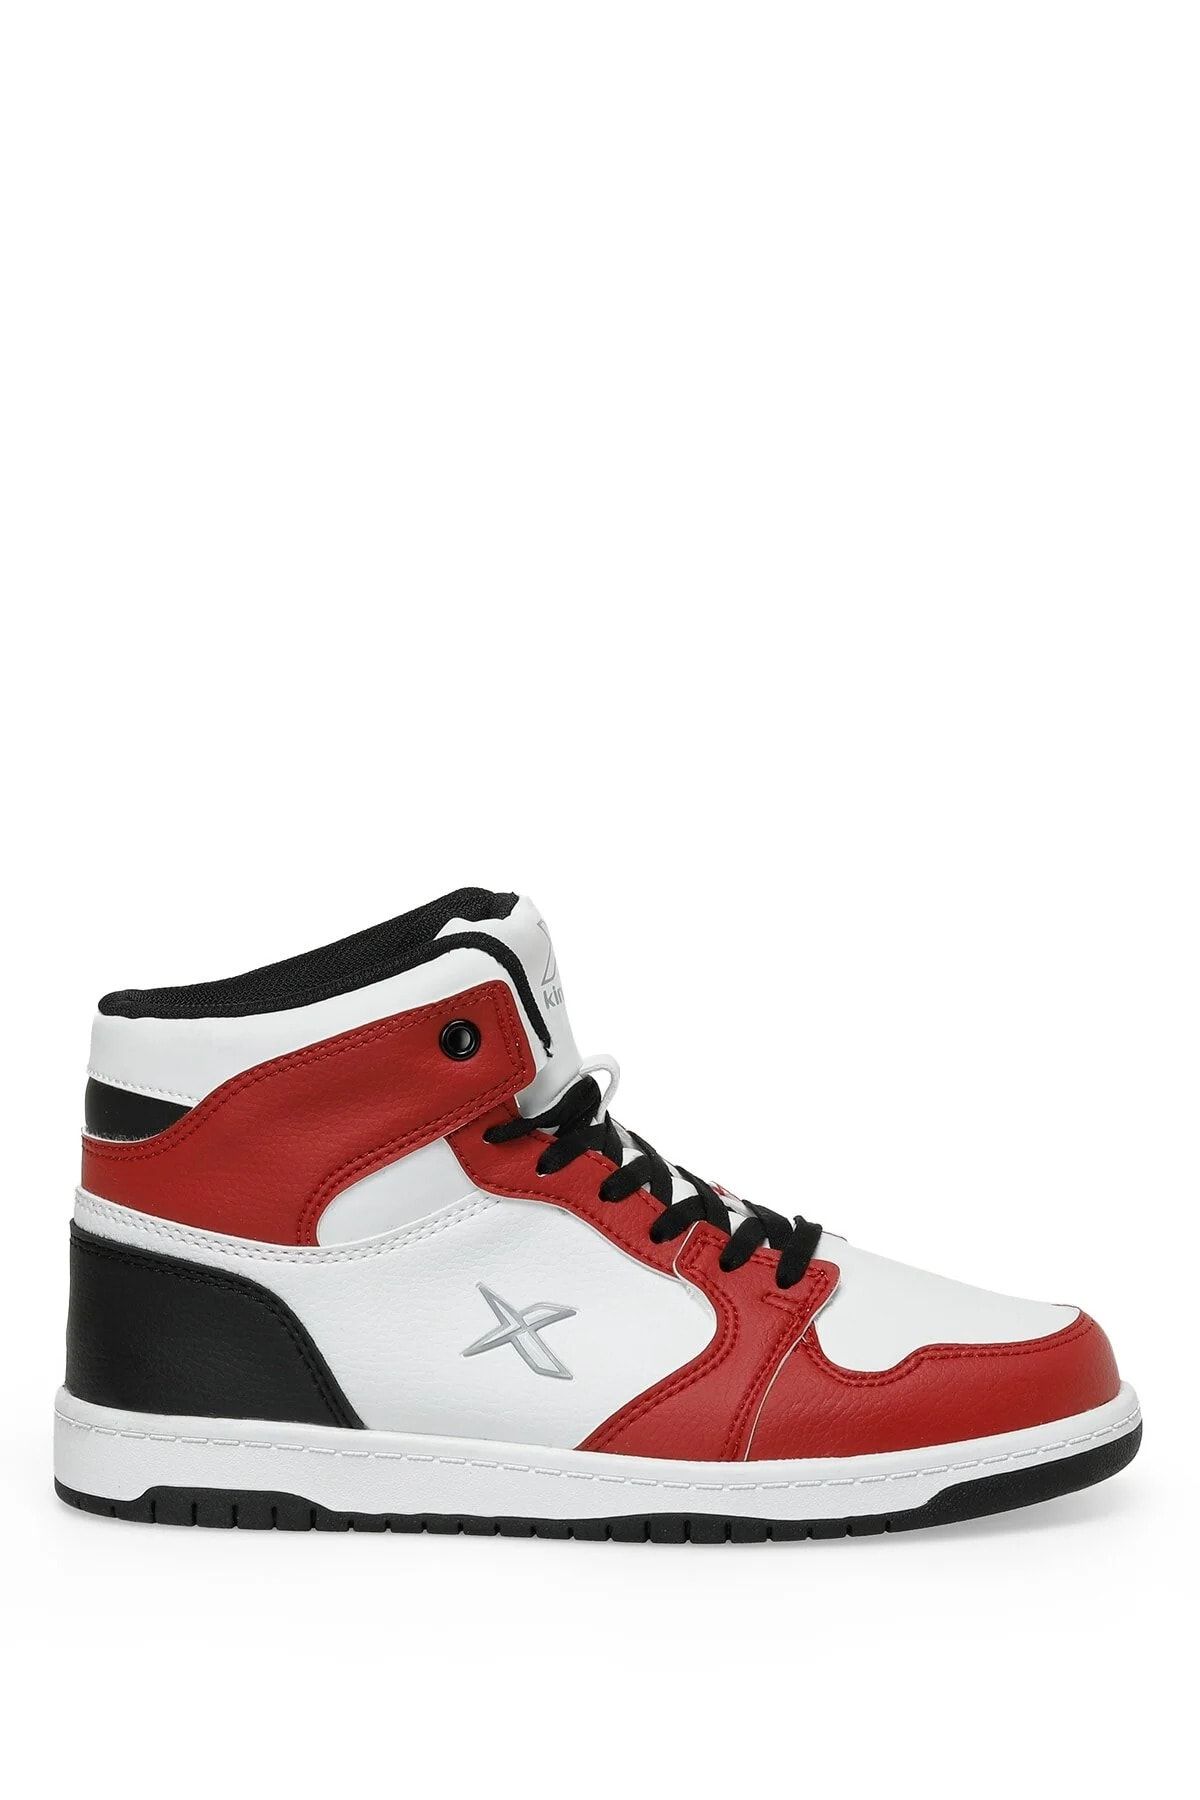 Kinetix Kırmızı-beyaz-siyah Erkek Sneakers 2sjoneshı3fx